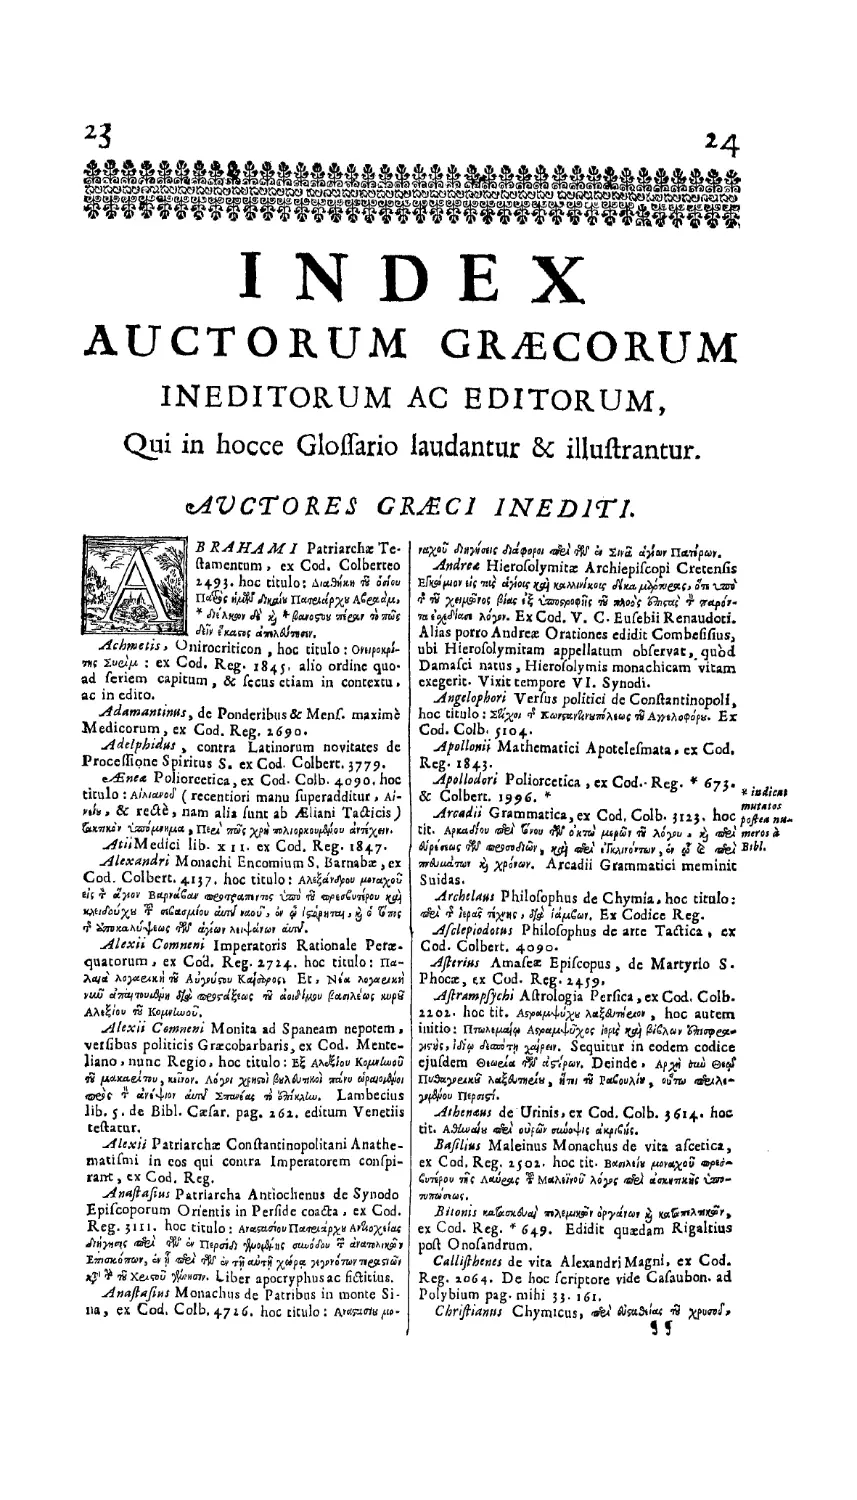 Index Auctorum
Index auctorum